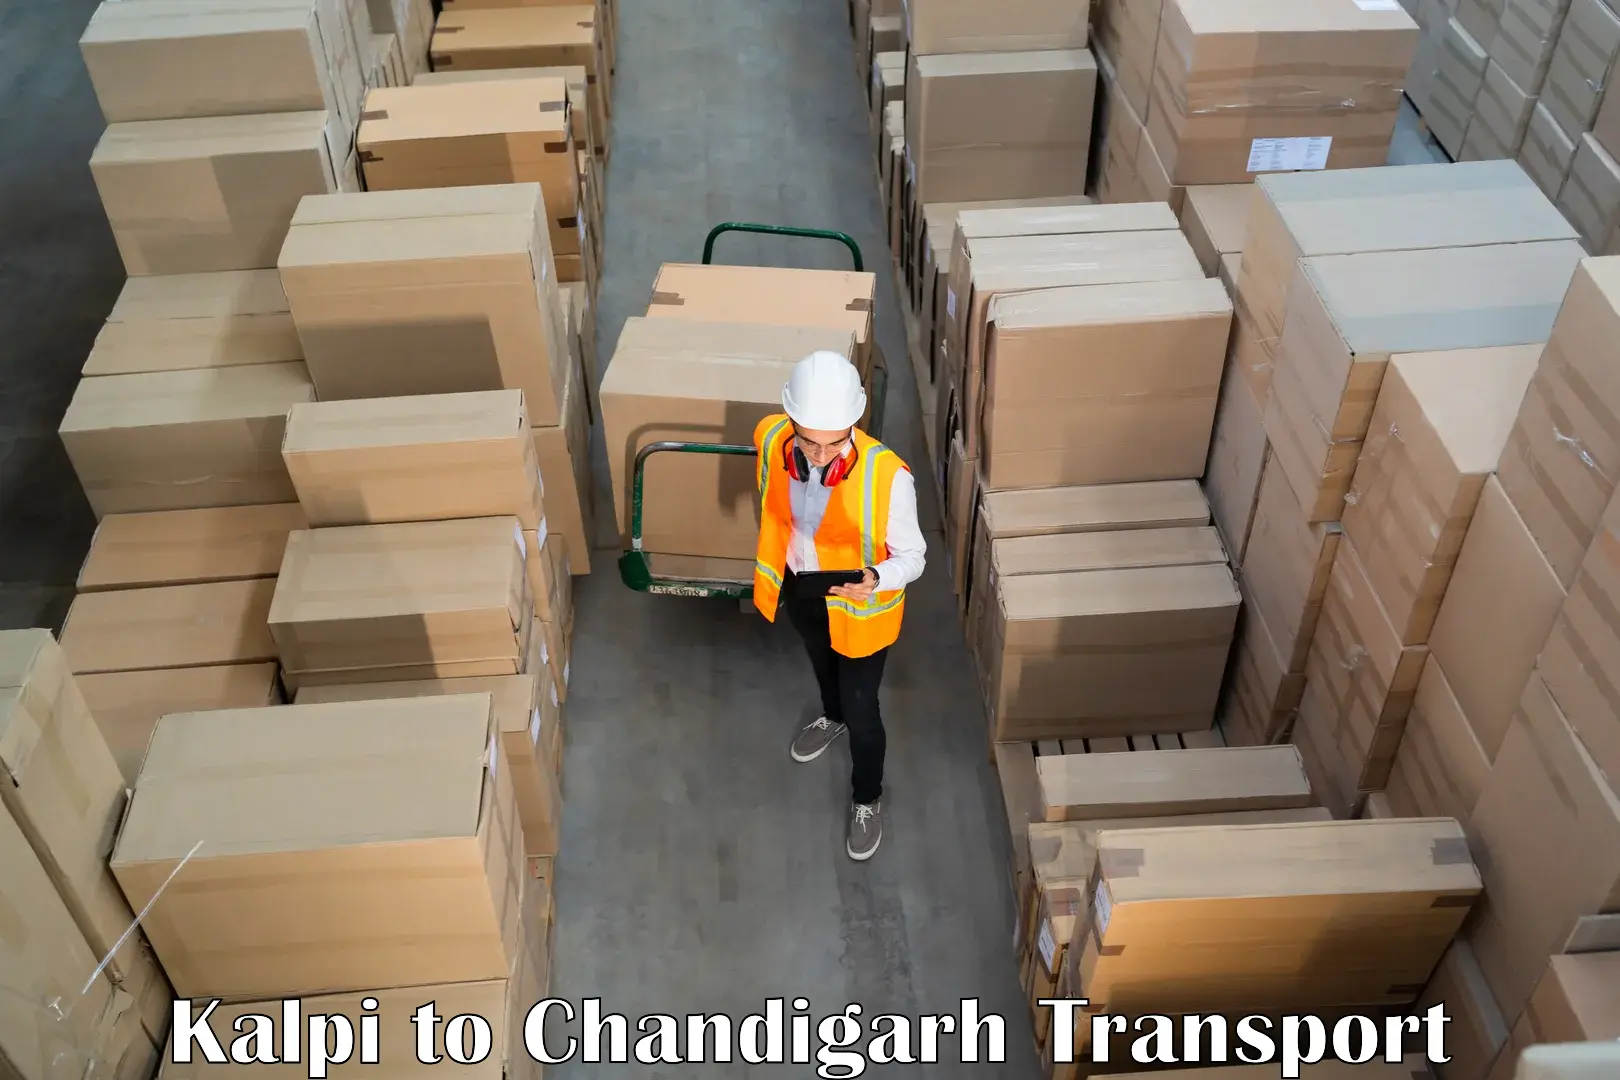 Online transport service Kalpi to Chandigarh